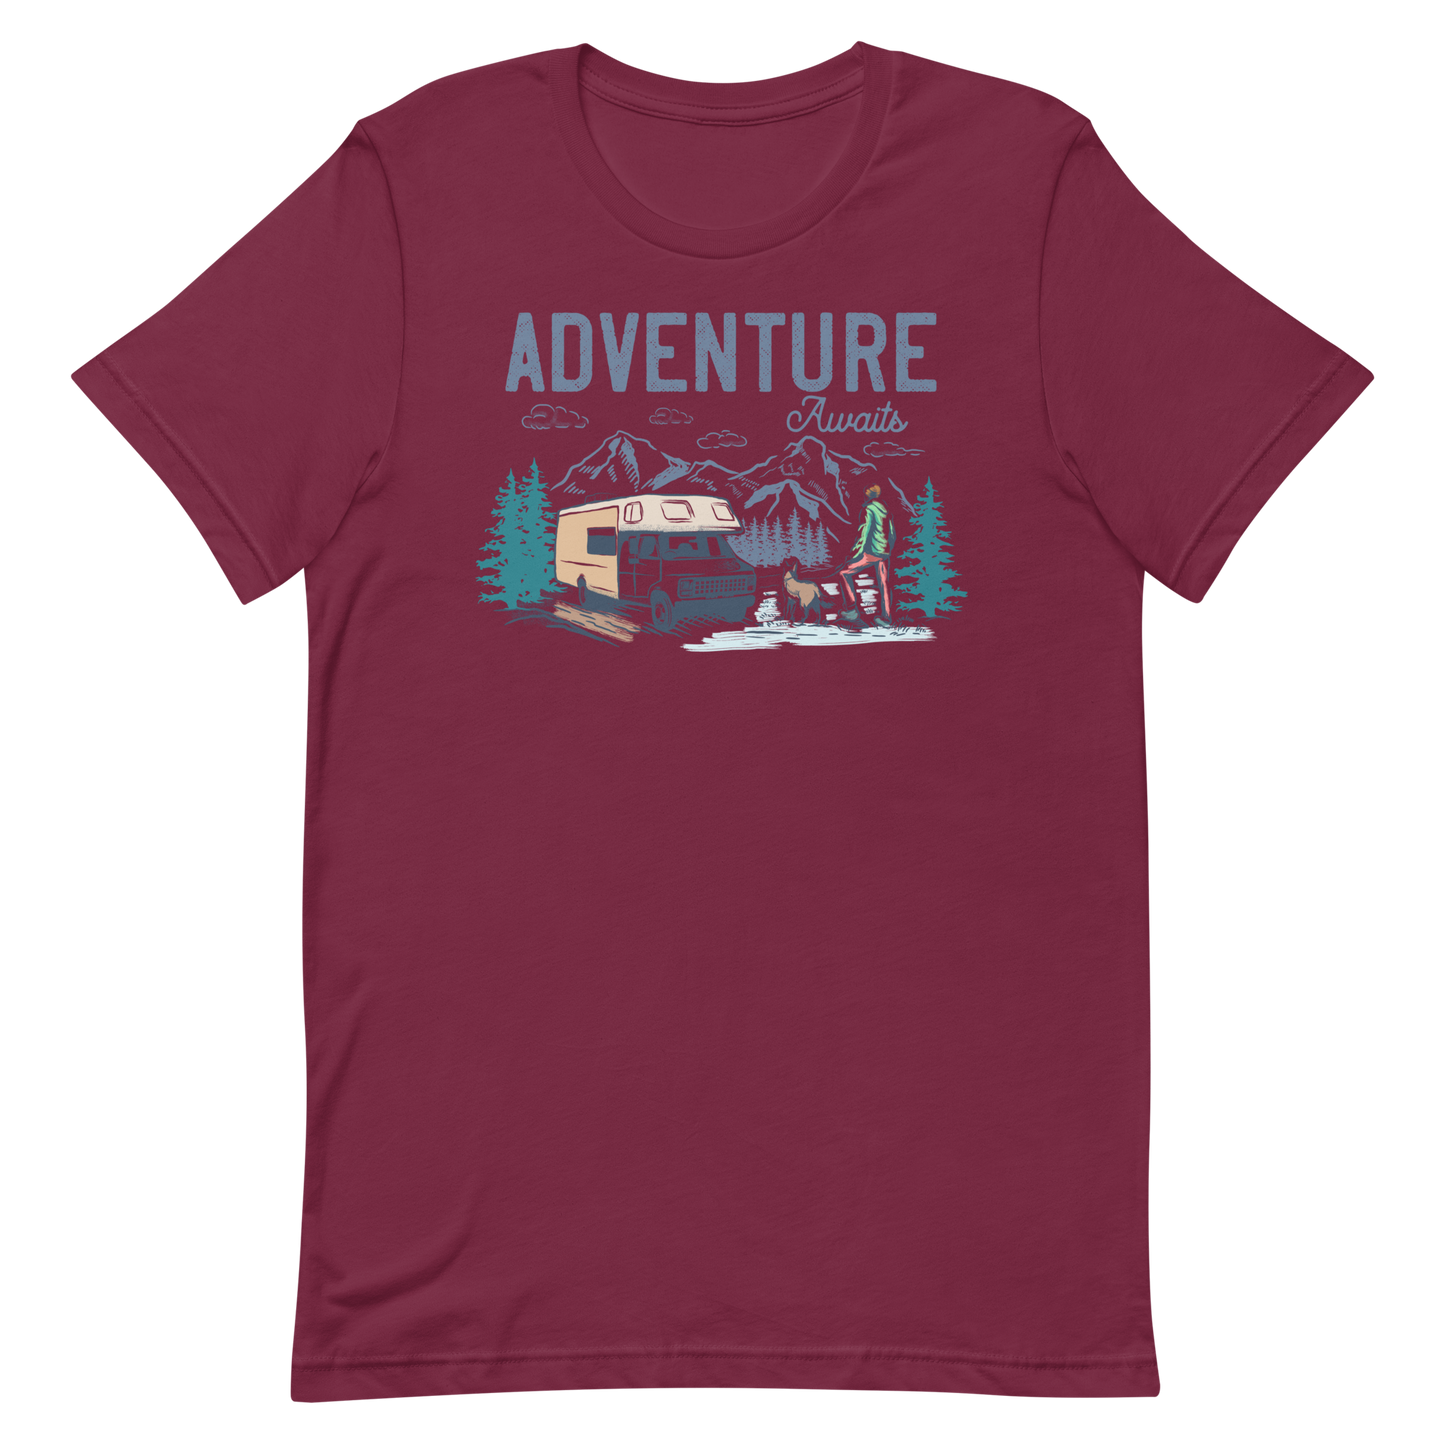 Adventure Awaits - Short-Sleeve Men and Women's T-Shirt